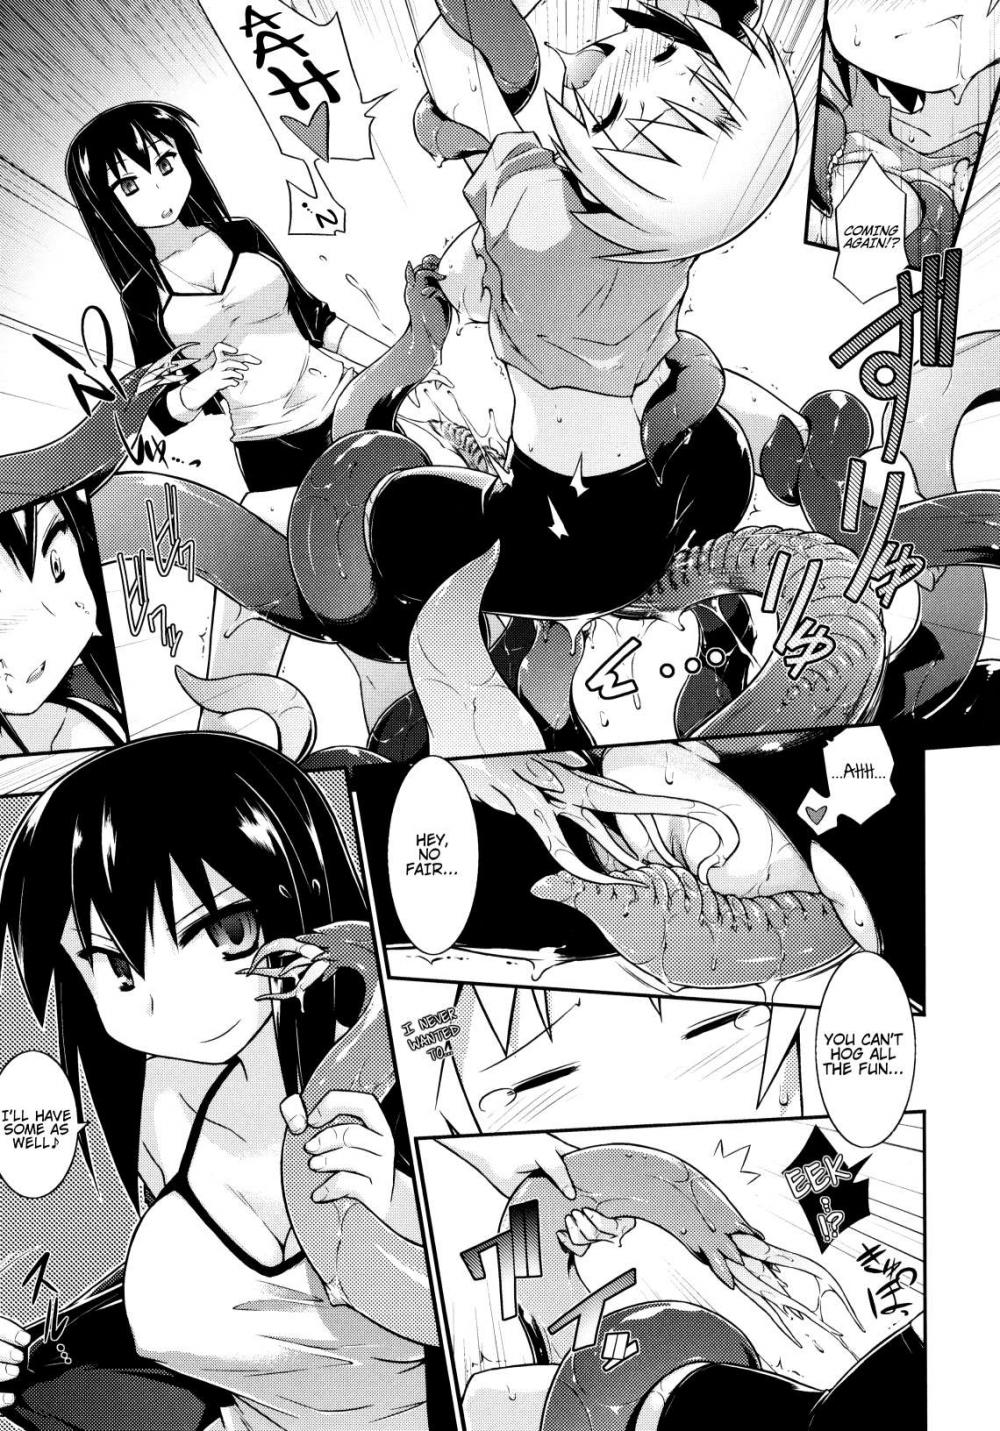 Hentai Manga Comic-3-funkan Fu-cking - Ready In 3 Minutes(Yori-Dori Ecstasy!!)-Read-9